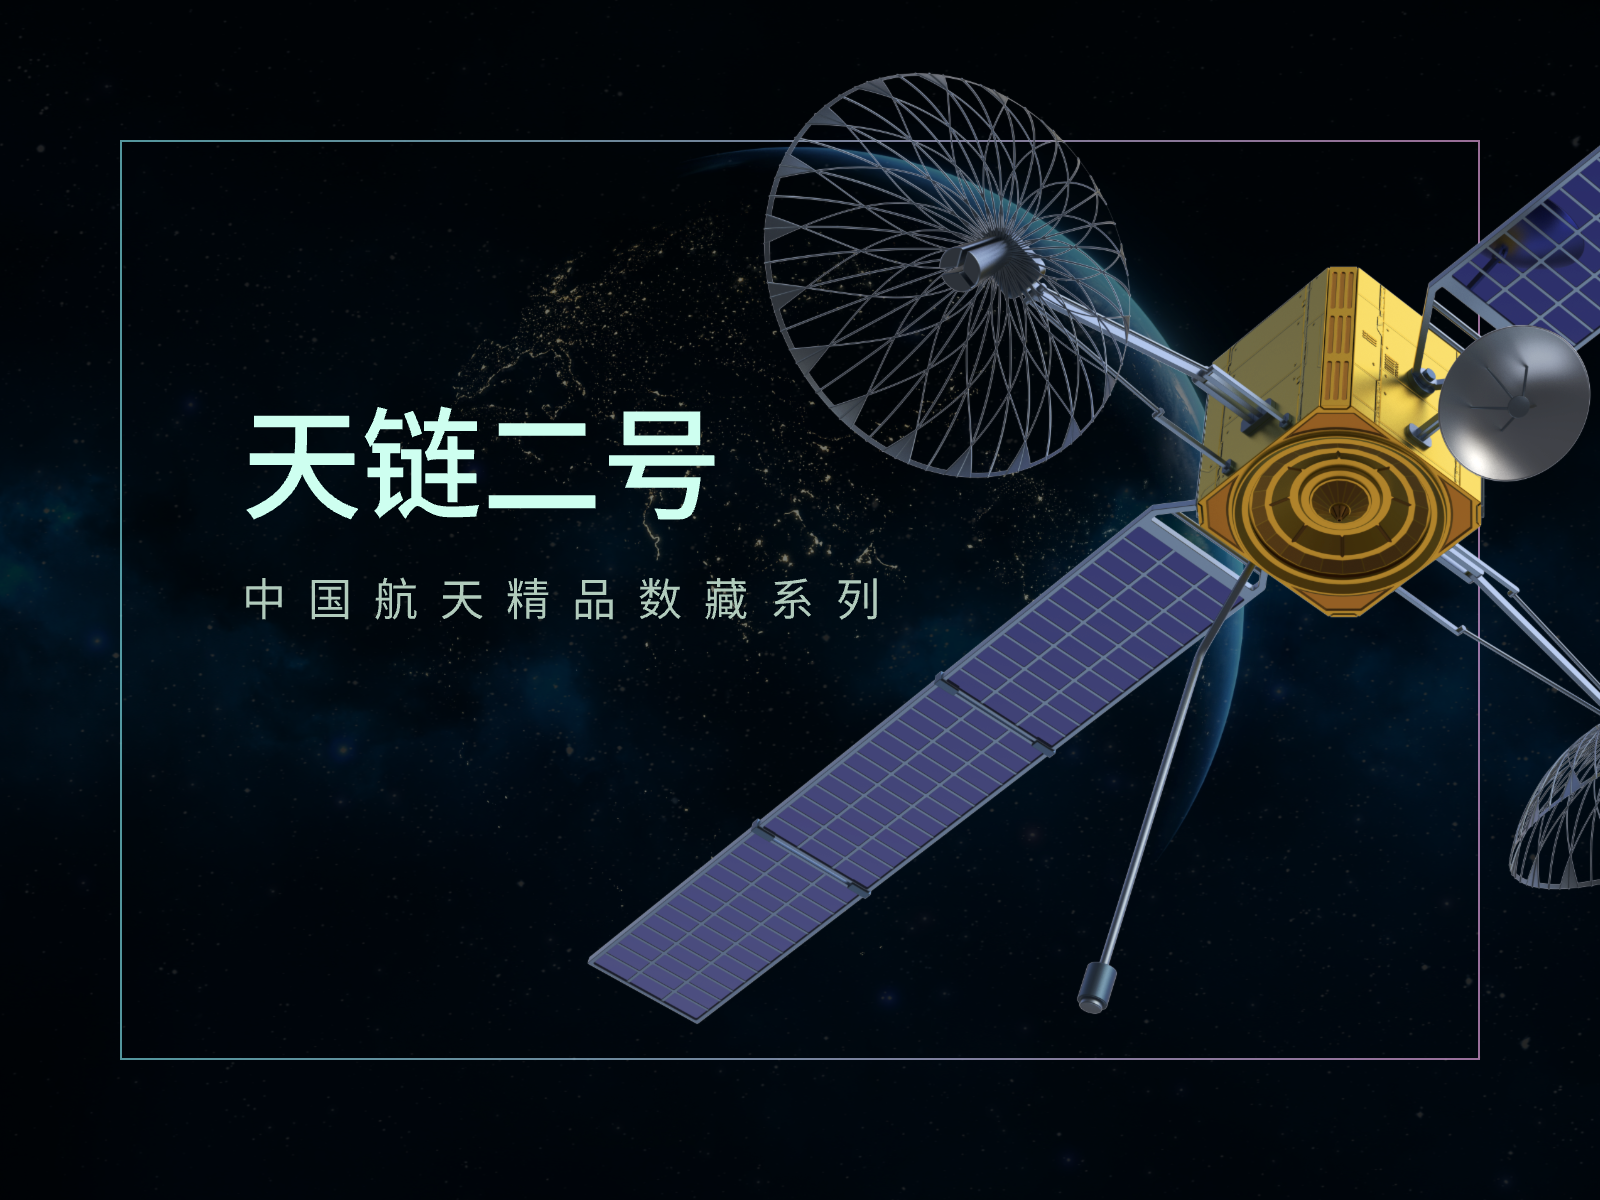 天链新星“入列” 我国第二代中继卫星系统建成-中国科普网